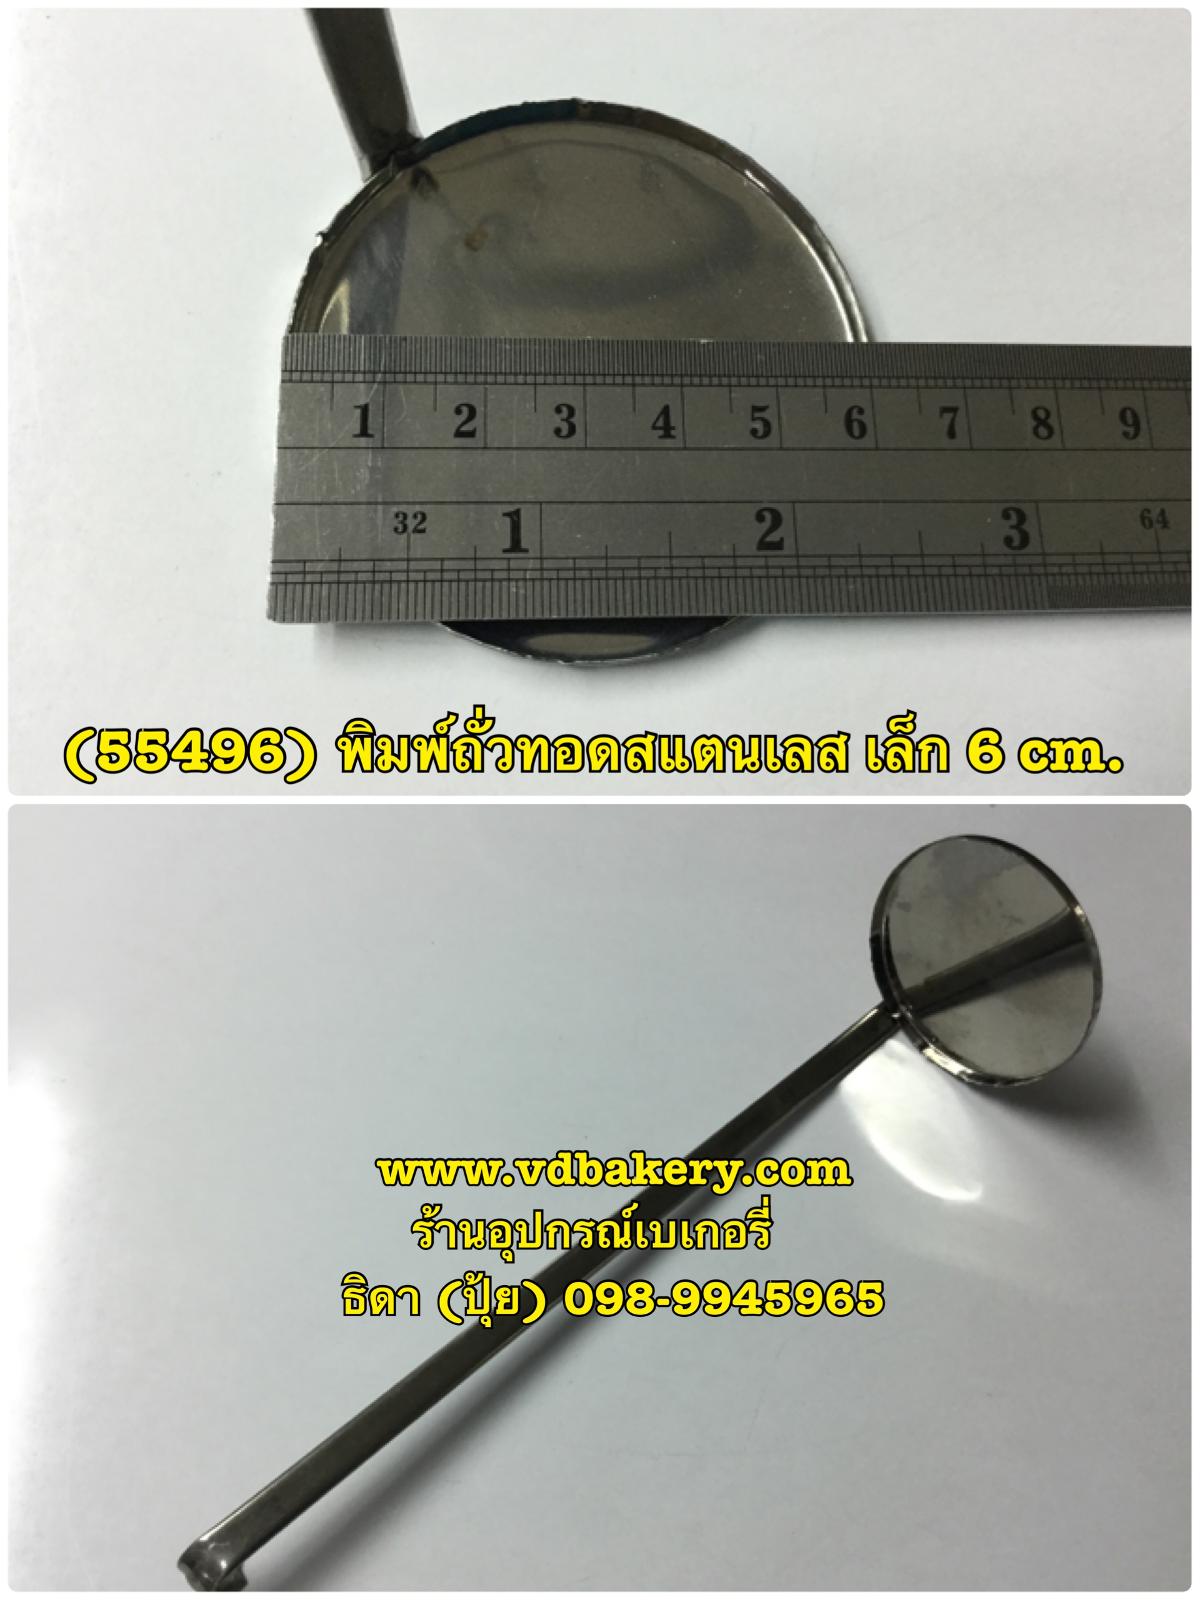 (55496) พิมพ์ถั่วทอดสแตนเลส เดี่ยว เล็ก (6 cm.)